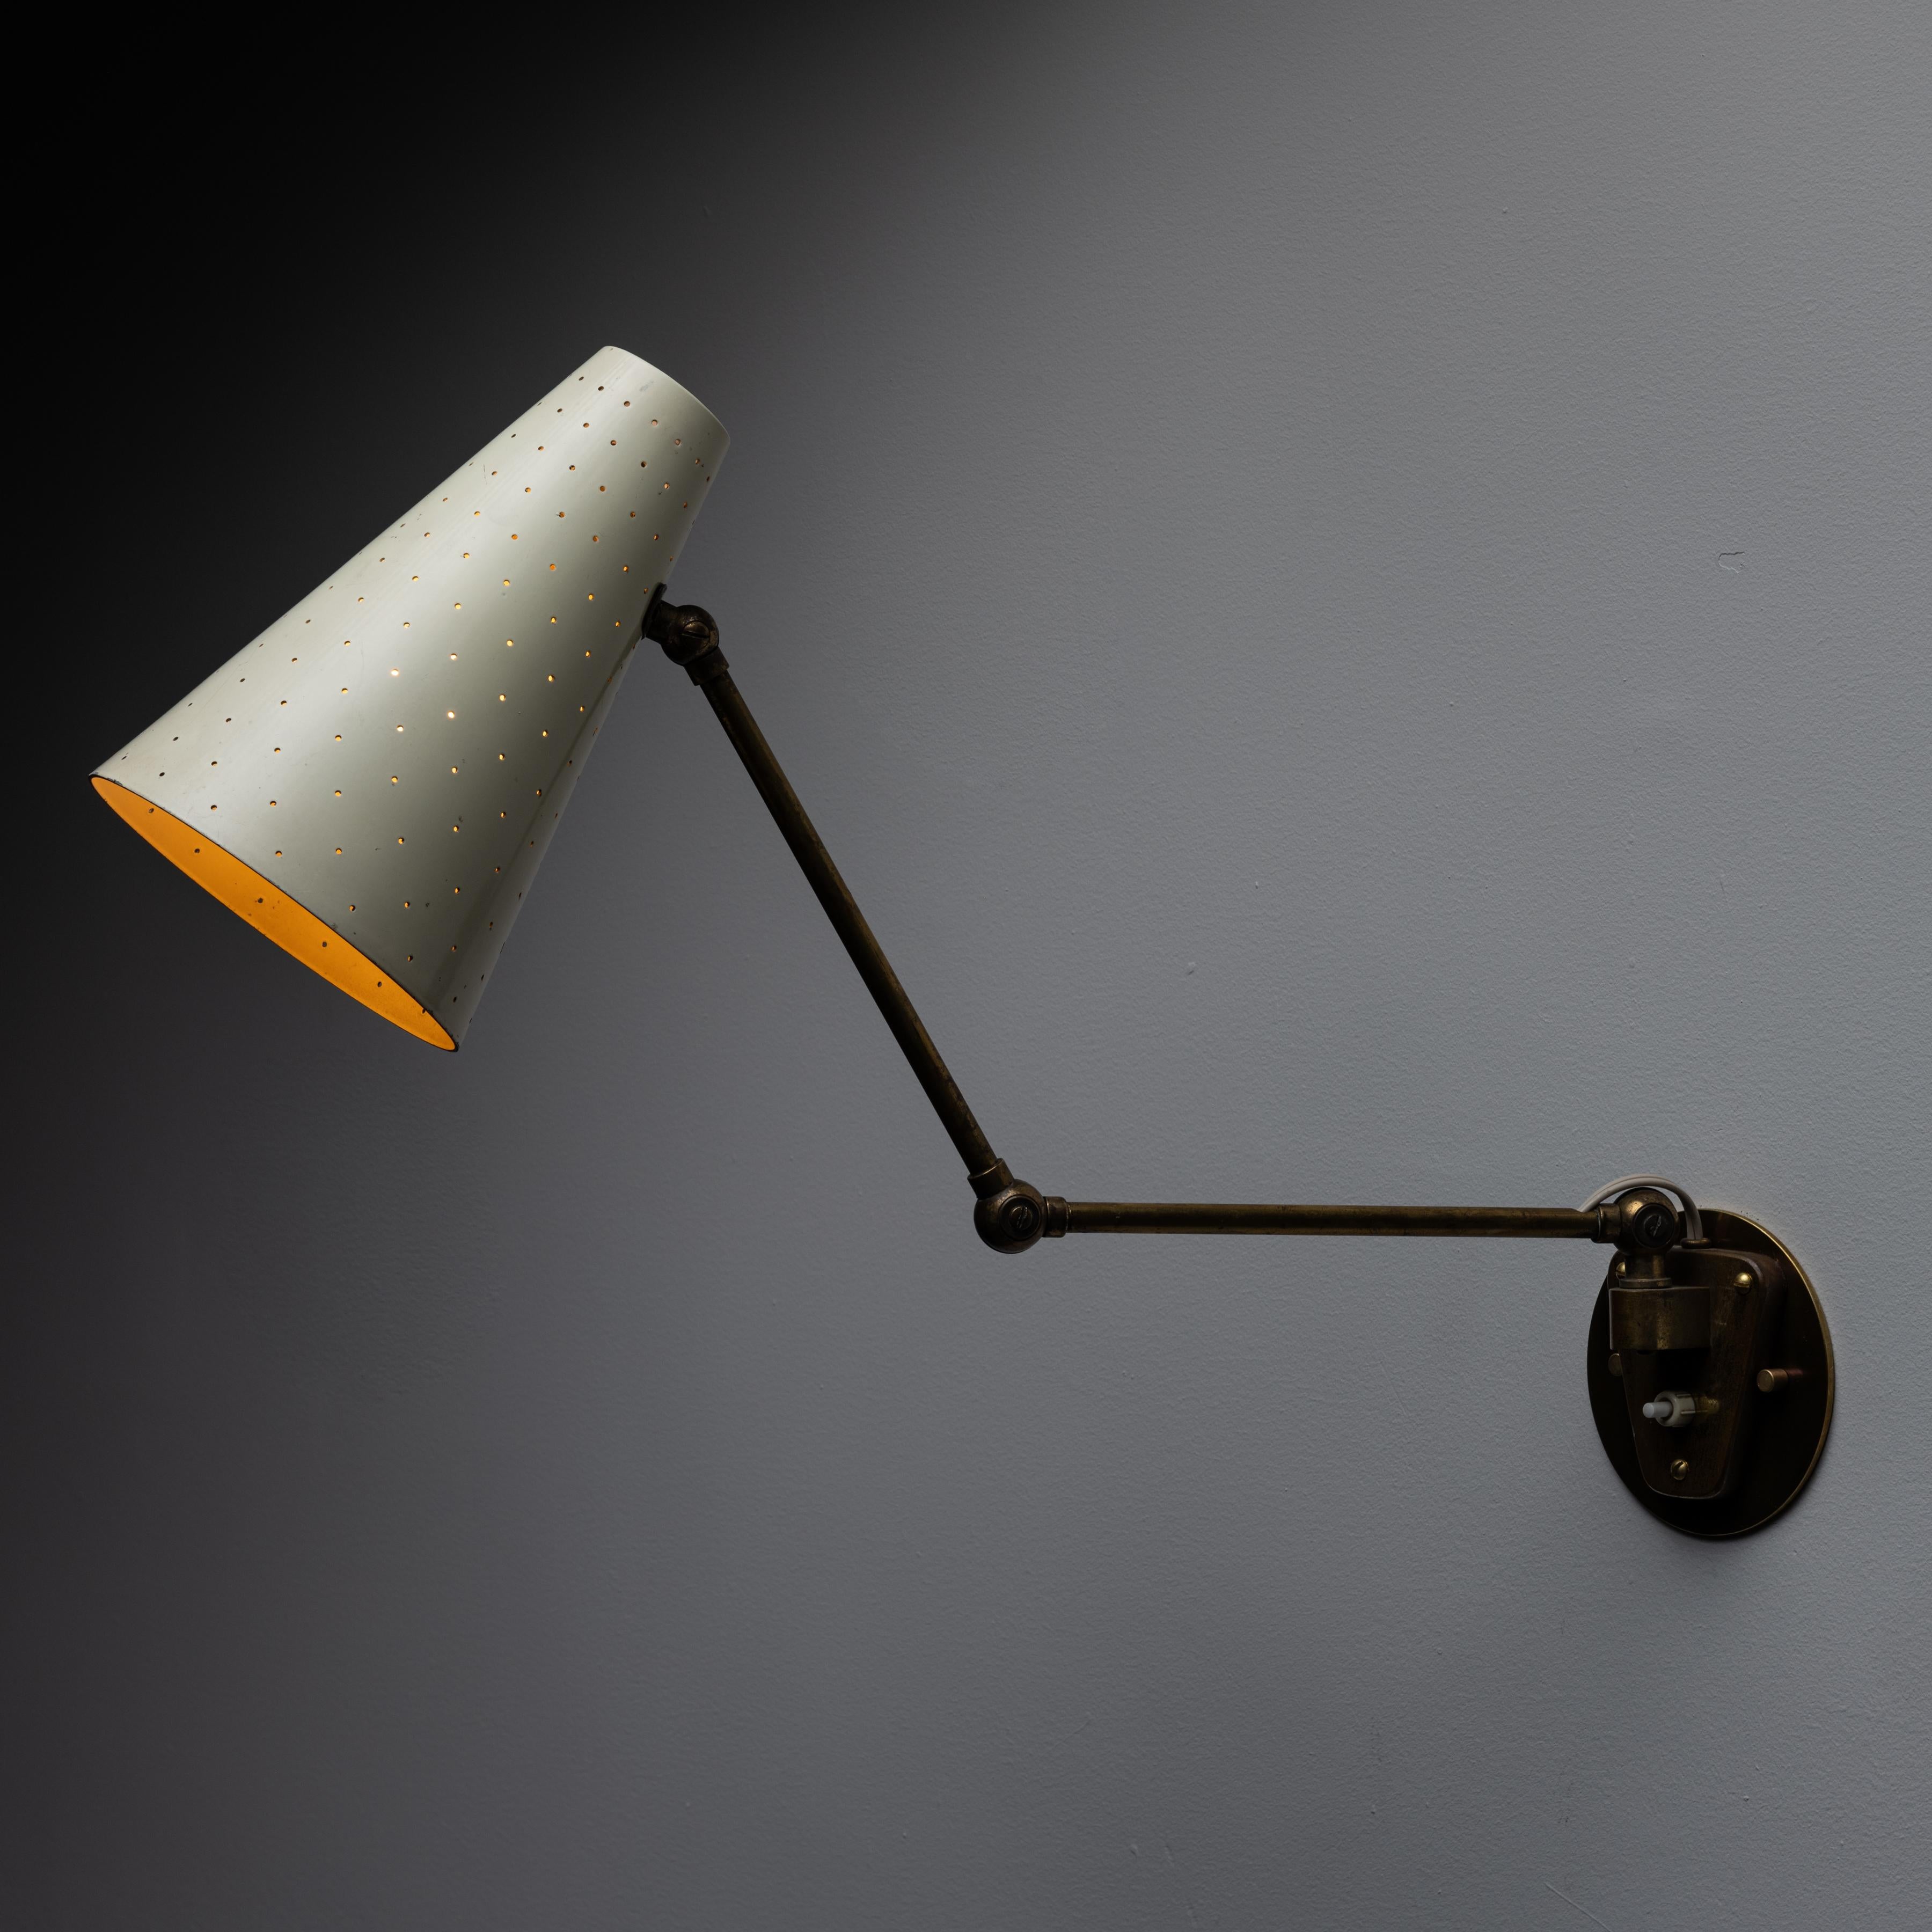 Wandleuchter von Giuseppe Ostuni für Oluce. Entworfen und hergestellt in Italien in den 1950er Jahren. Ein emaillierter, perforierter Schirm mit einer dreieckigen Armatur. Die Mehrfachkupplungen ermöglichen eine fließende Positionierung. Diese Lampe